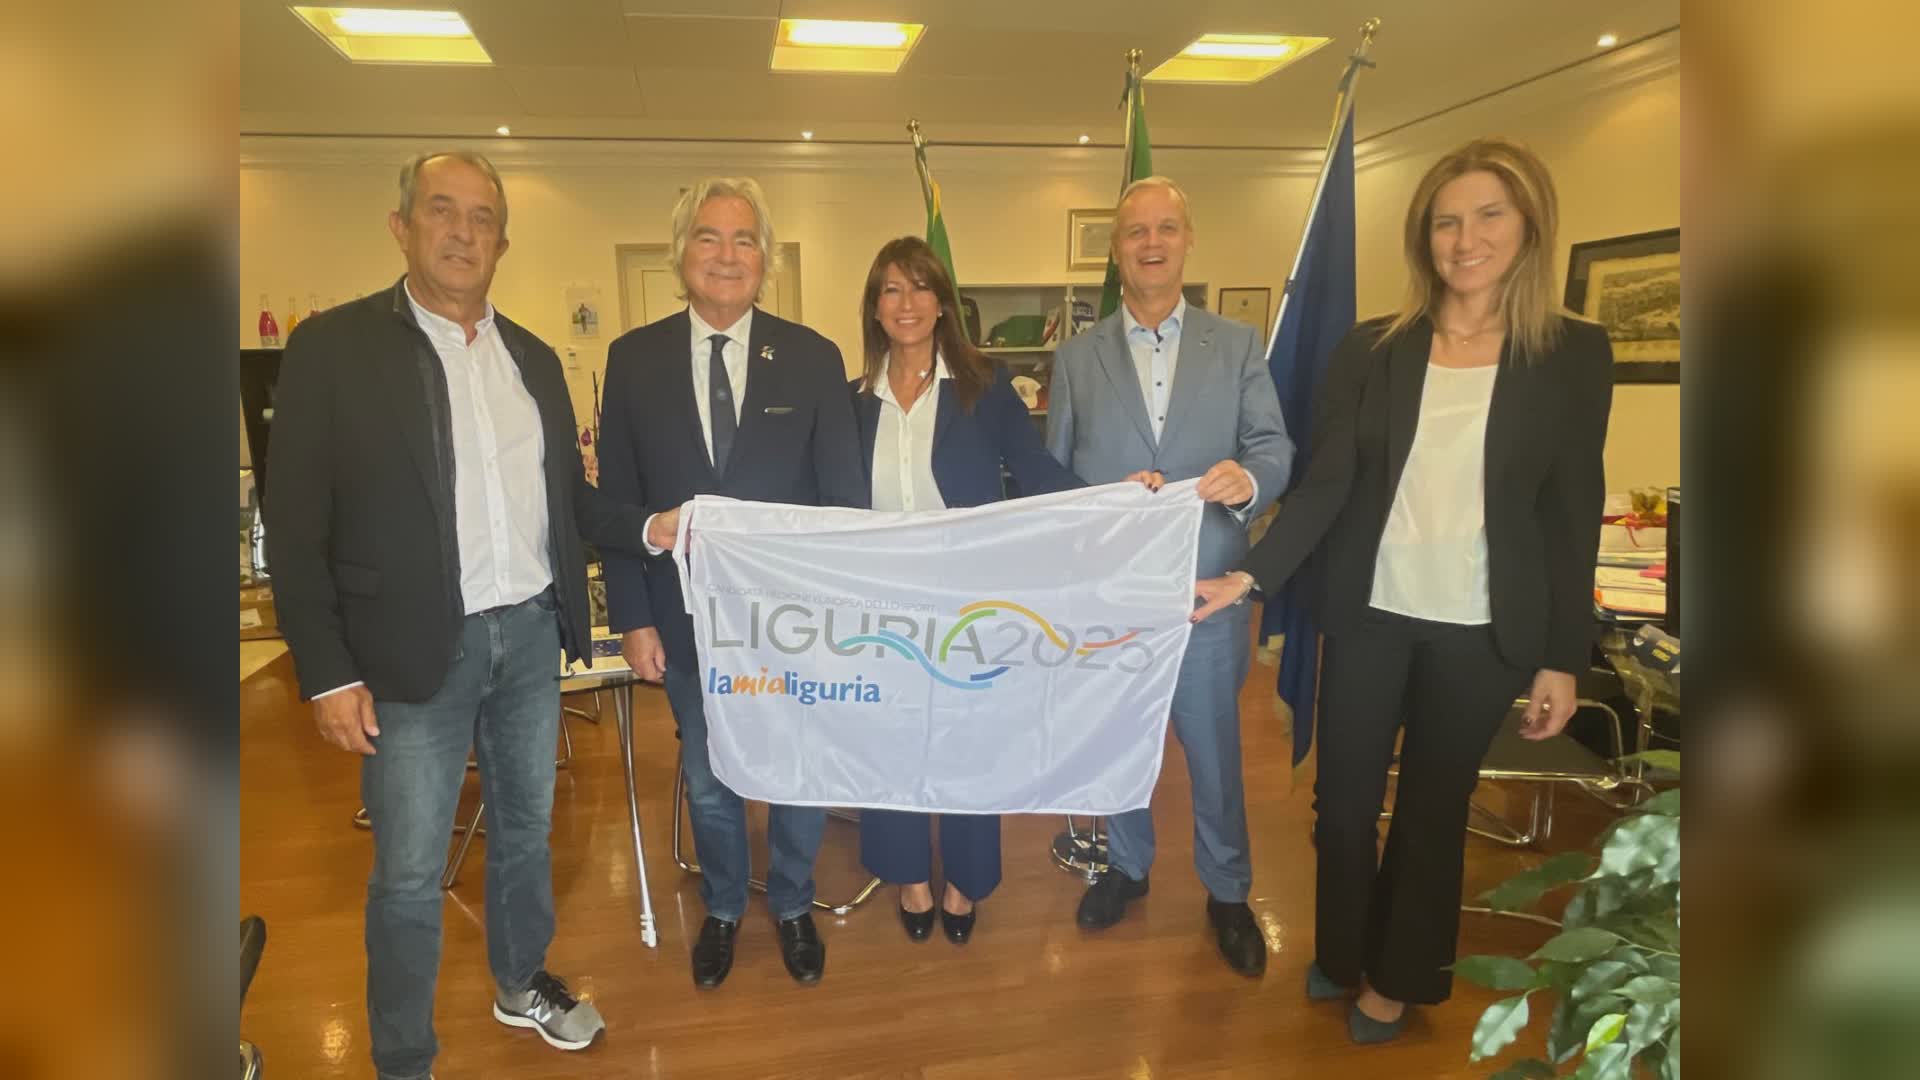 Liguria regione europea dello sport 2025, la commissione Aces valuta la candidatura